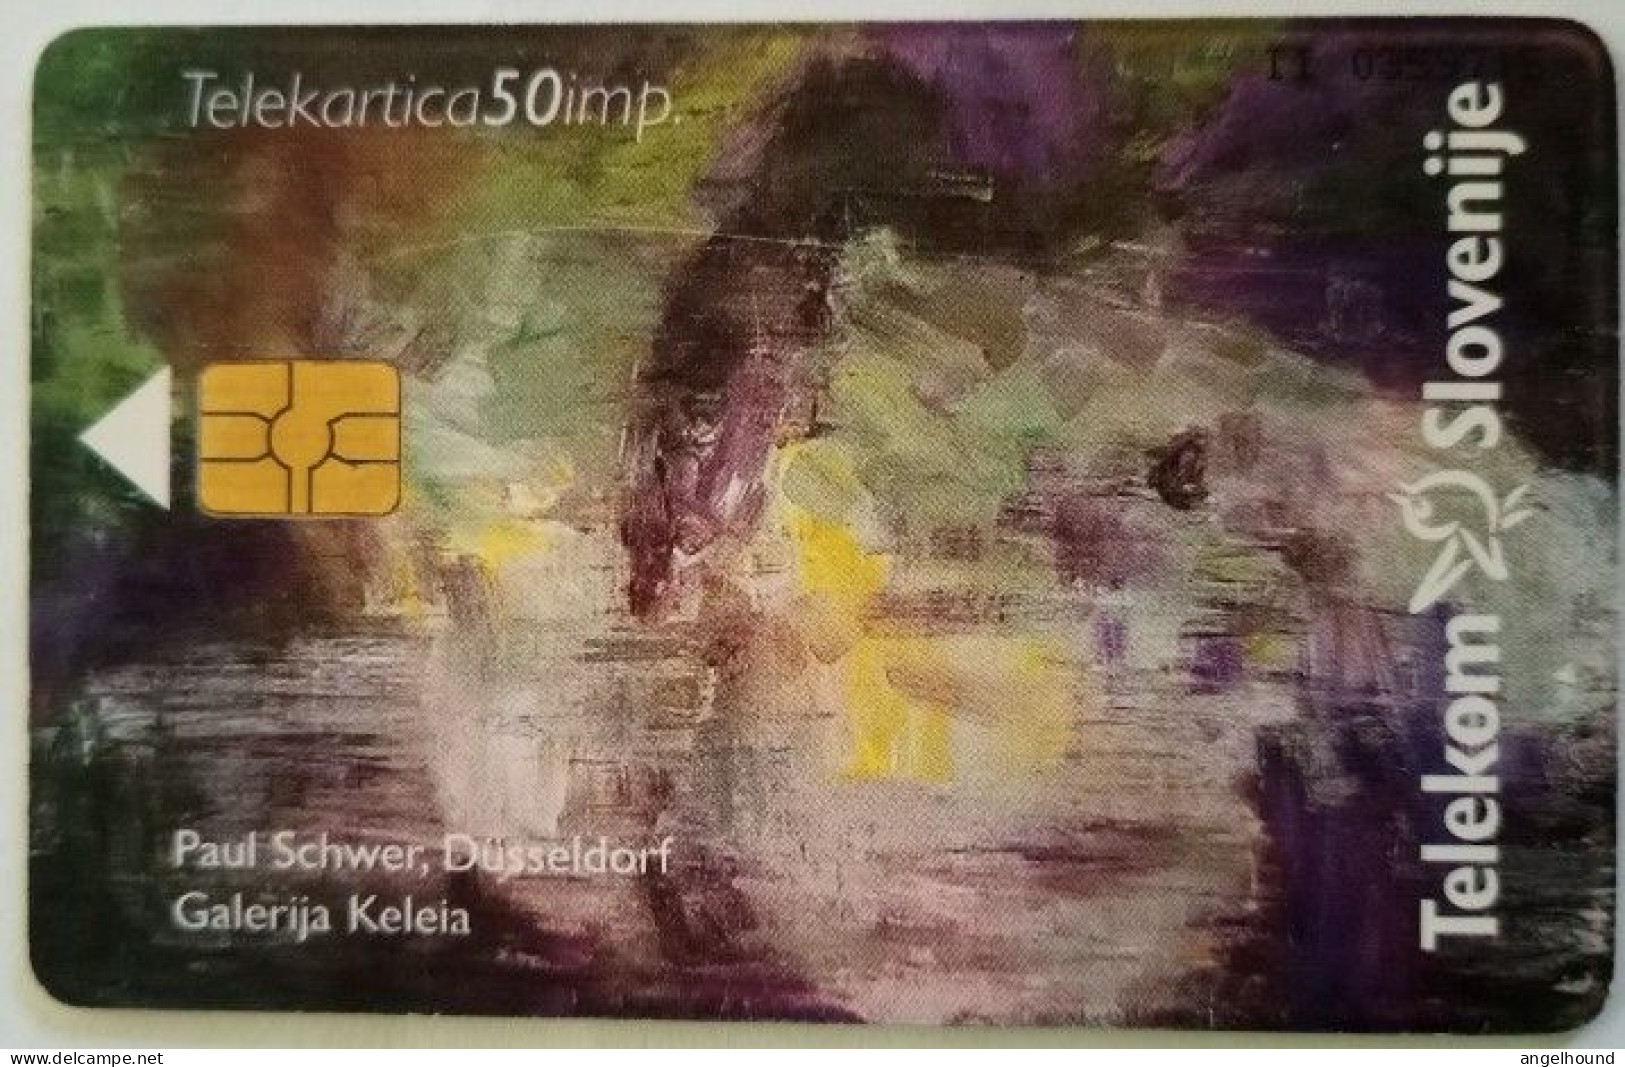 Slovenia 50 Unit Chip Card - Paul Schwer / Dusseldorf Galerija Kelera / Zdruzenje Sloven - Slowenien